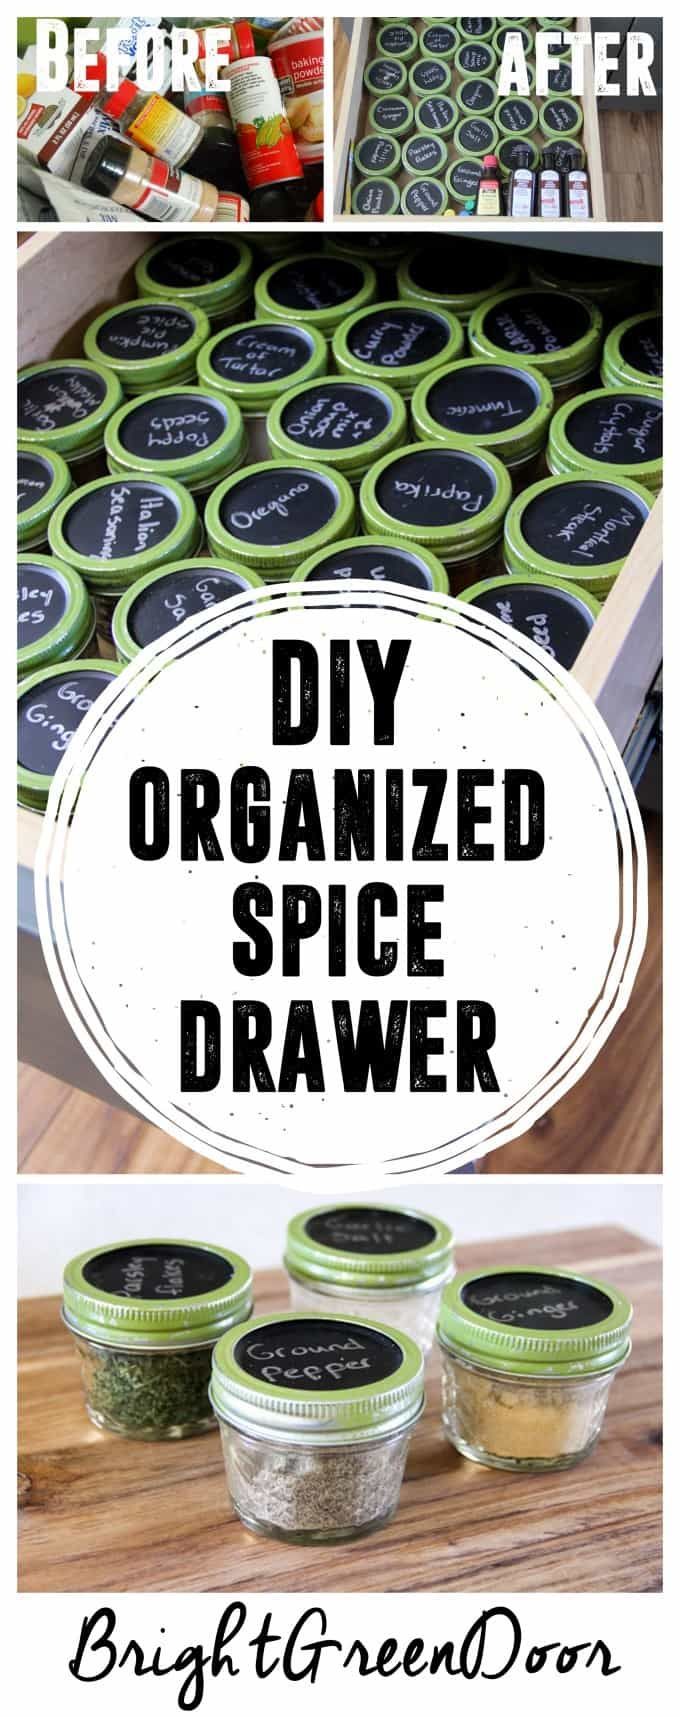 Simple Spice Organization - Simple Spice Organization -   19 diy Organization spices ideas